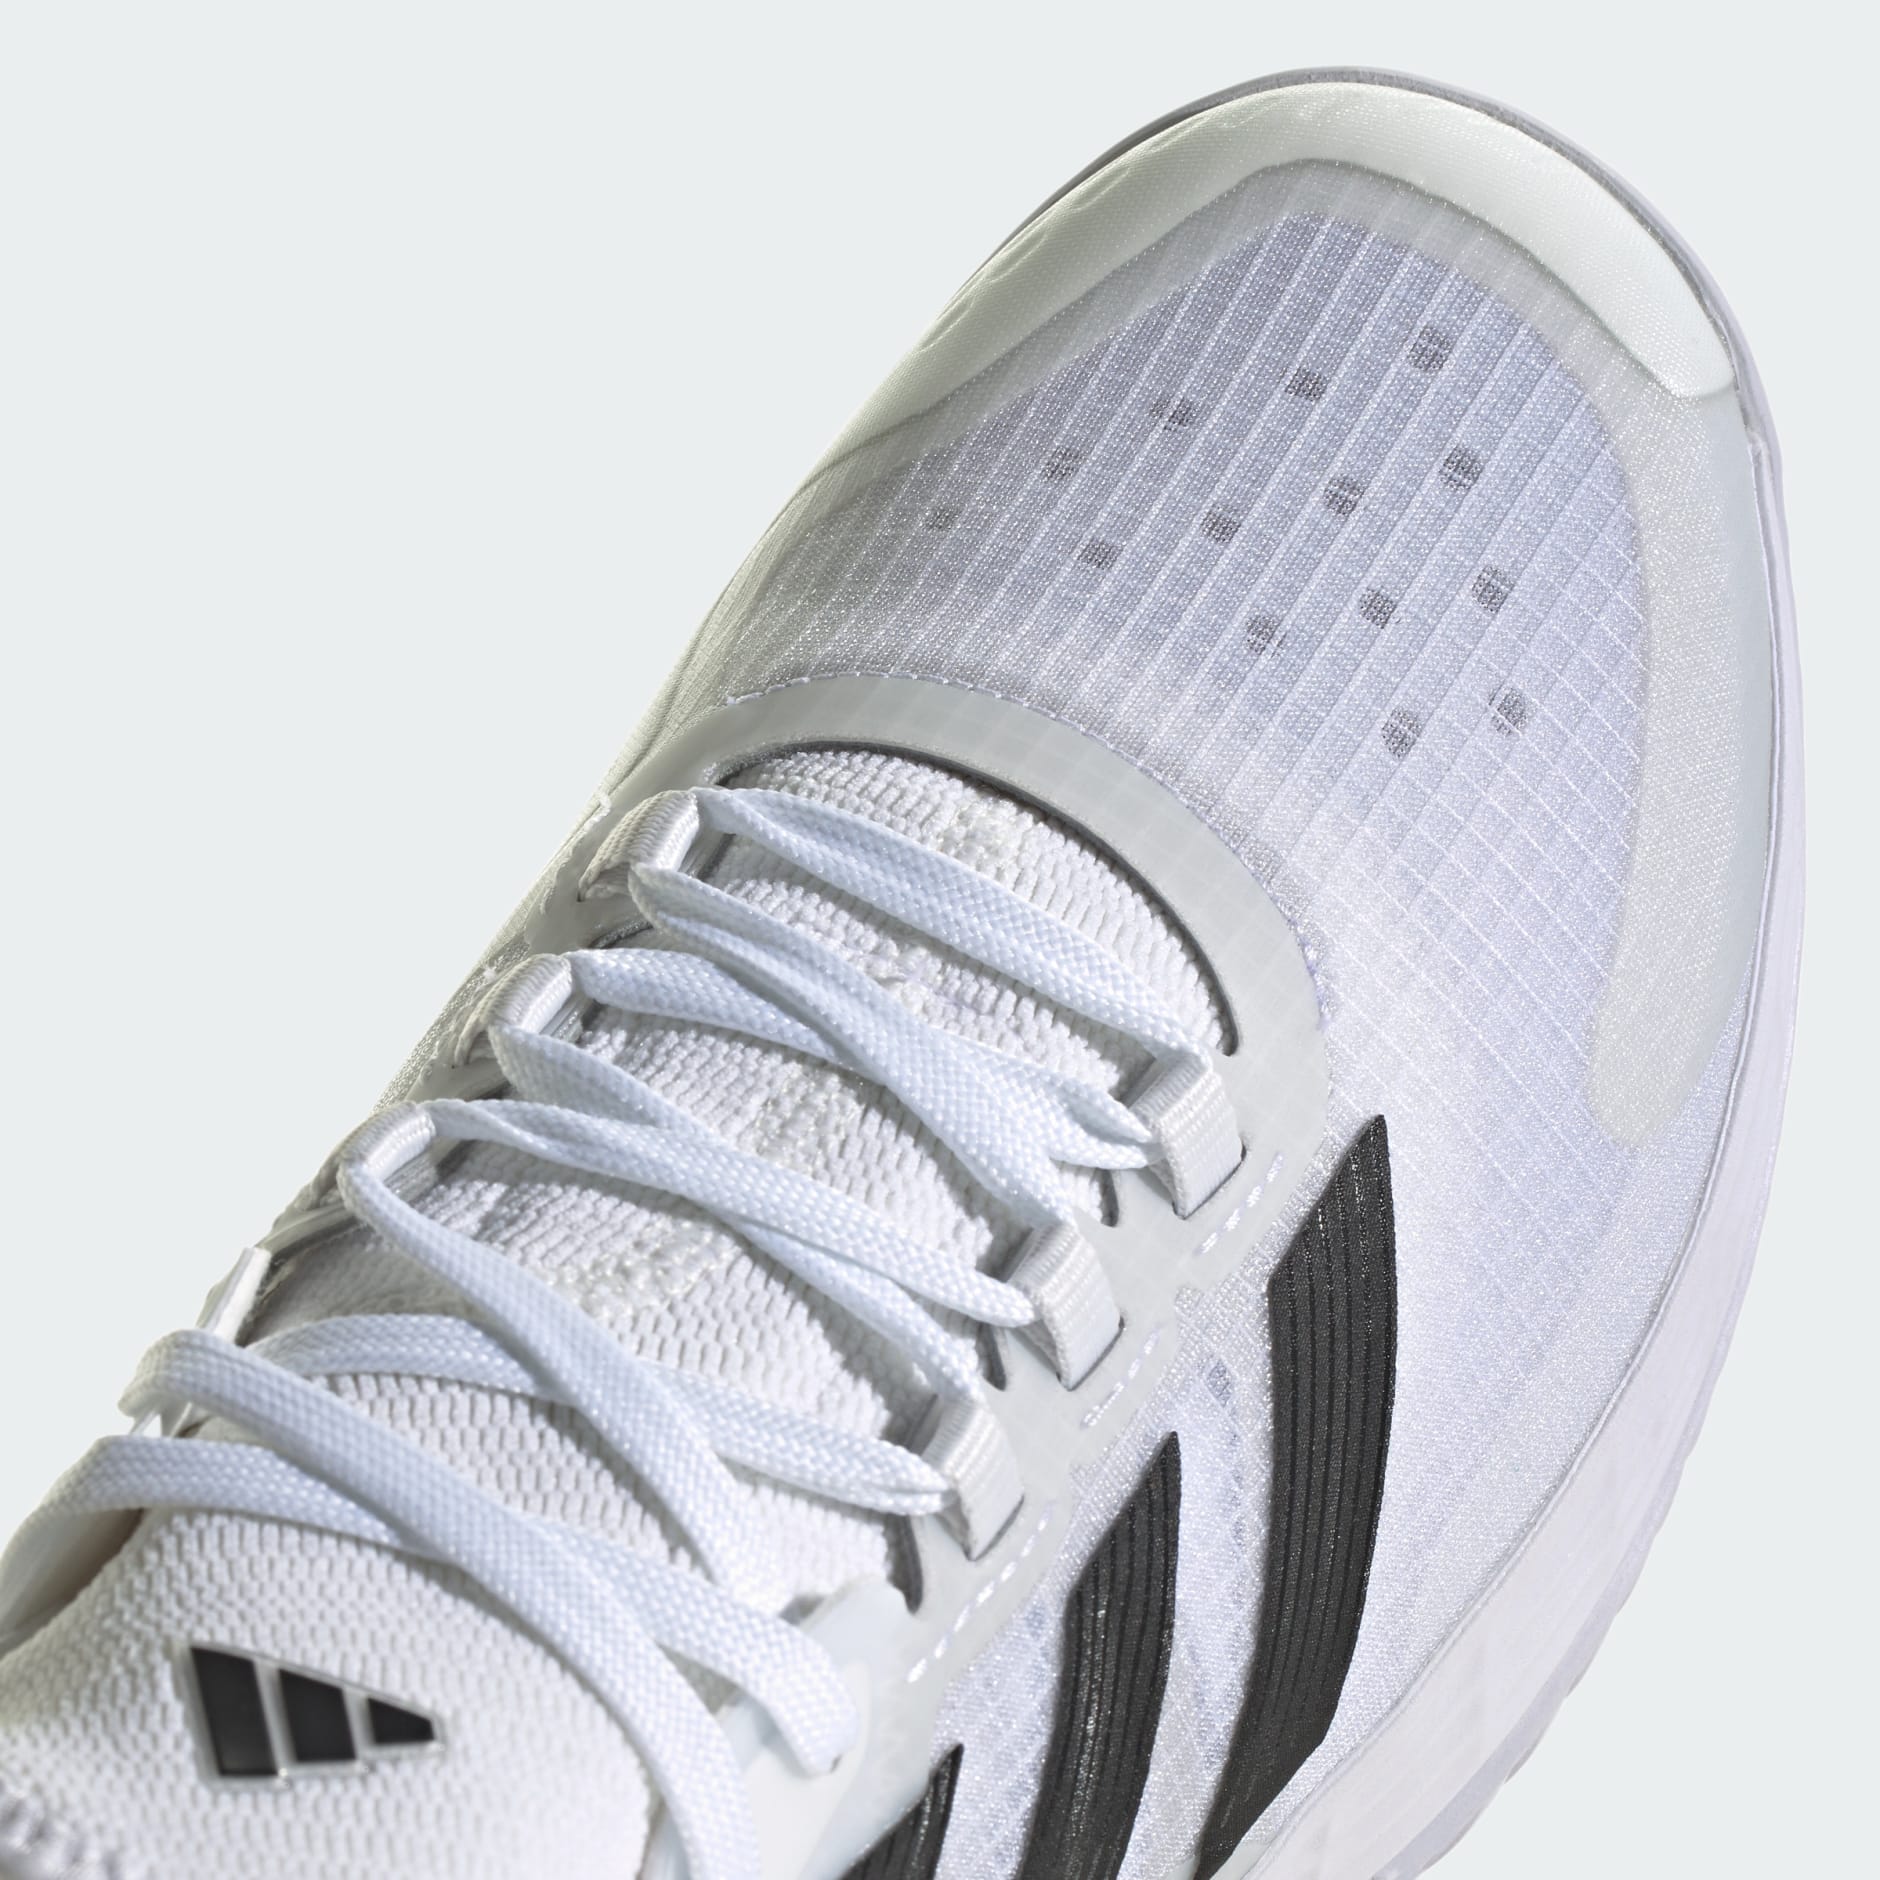 adidas Adizero Ubersonic 4.1 Tennis Shoes - White | adidas UAE